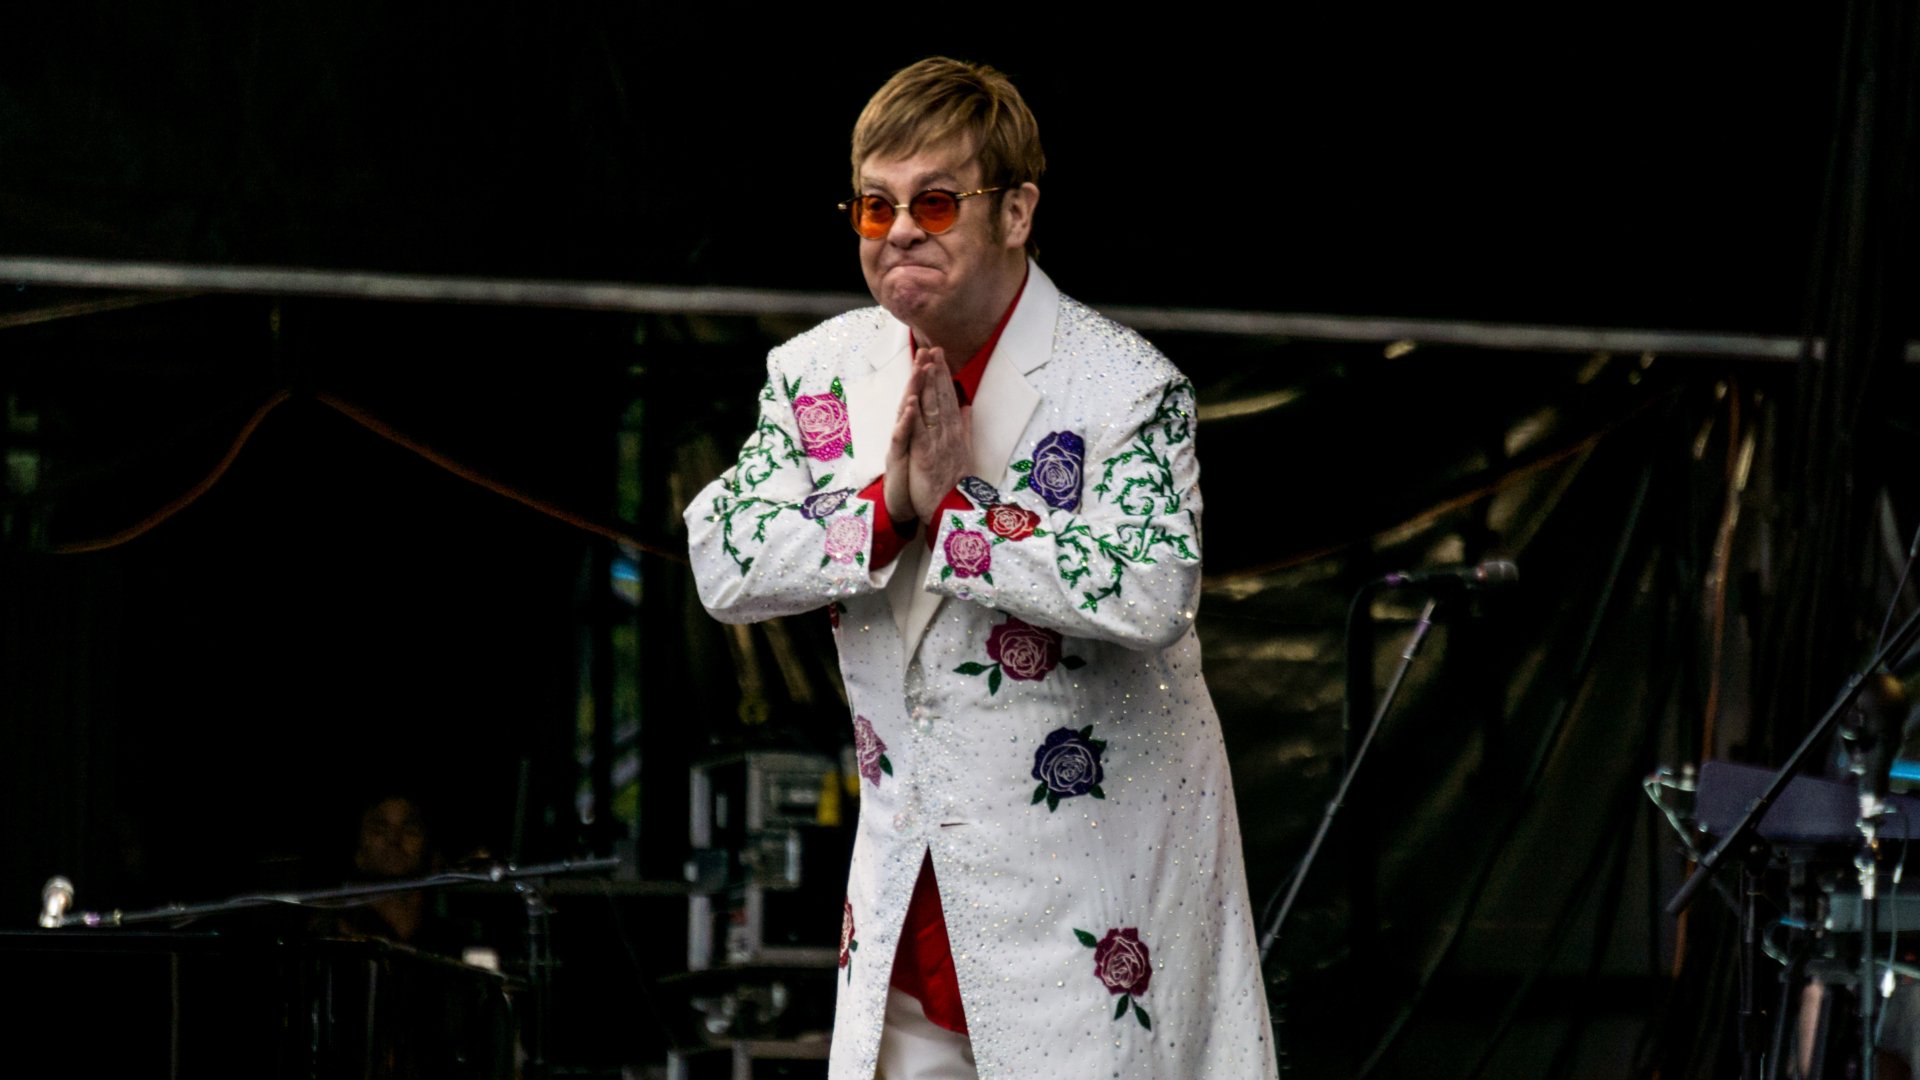 Concierto de Elton John en Barcelona: 10 curiosidades que te volarán la cabeza